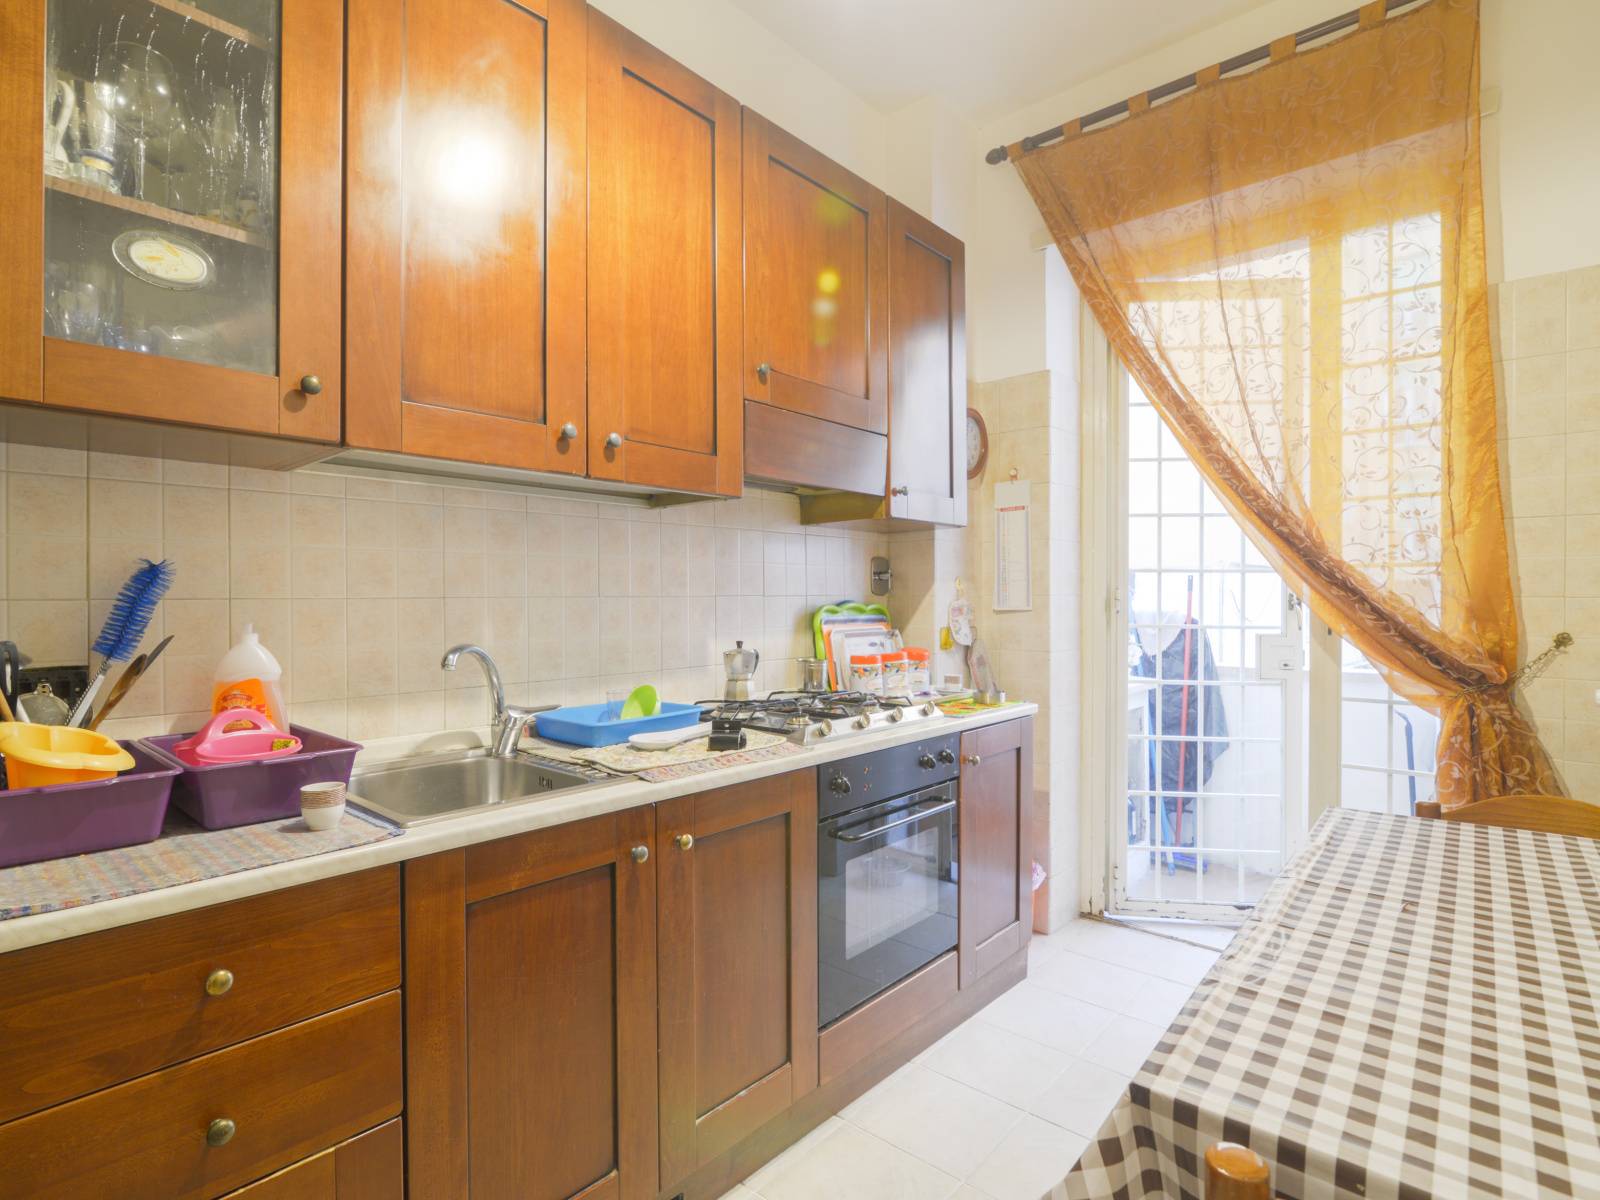 Appartamento in vendita a Roma, 4 locali, zona Zona: 2 . Flaminio, Parioli, Pinciano, Villa Borghese, prezzo € 650.000 | CambioCasa.it